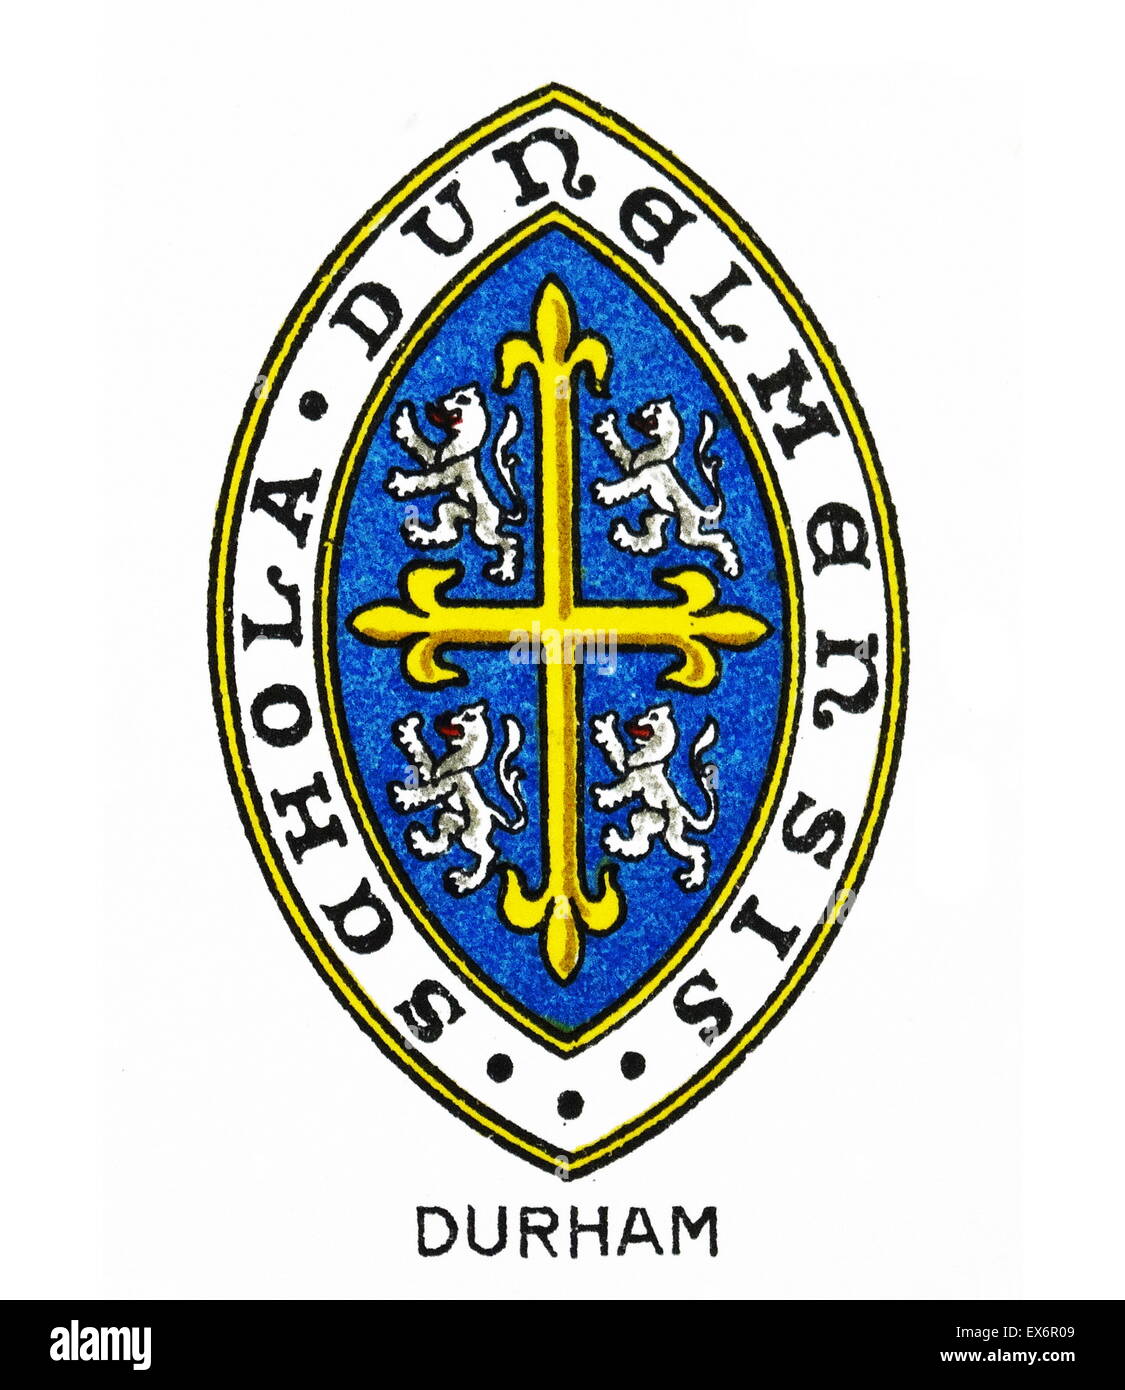 Emblème pour le Collège Durham, Durham, Durham Comté indépendant anglais un pensionnat pour les élèves. Fondée par l'évêque de Durham, Thomas Langley en 1414 comme l'école de grammaire, Durham a reçu la fondation par le Roi Henry VIII en 1541. Banque D'Images